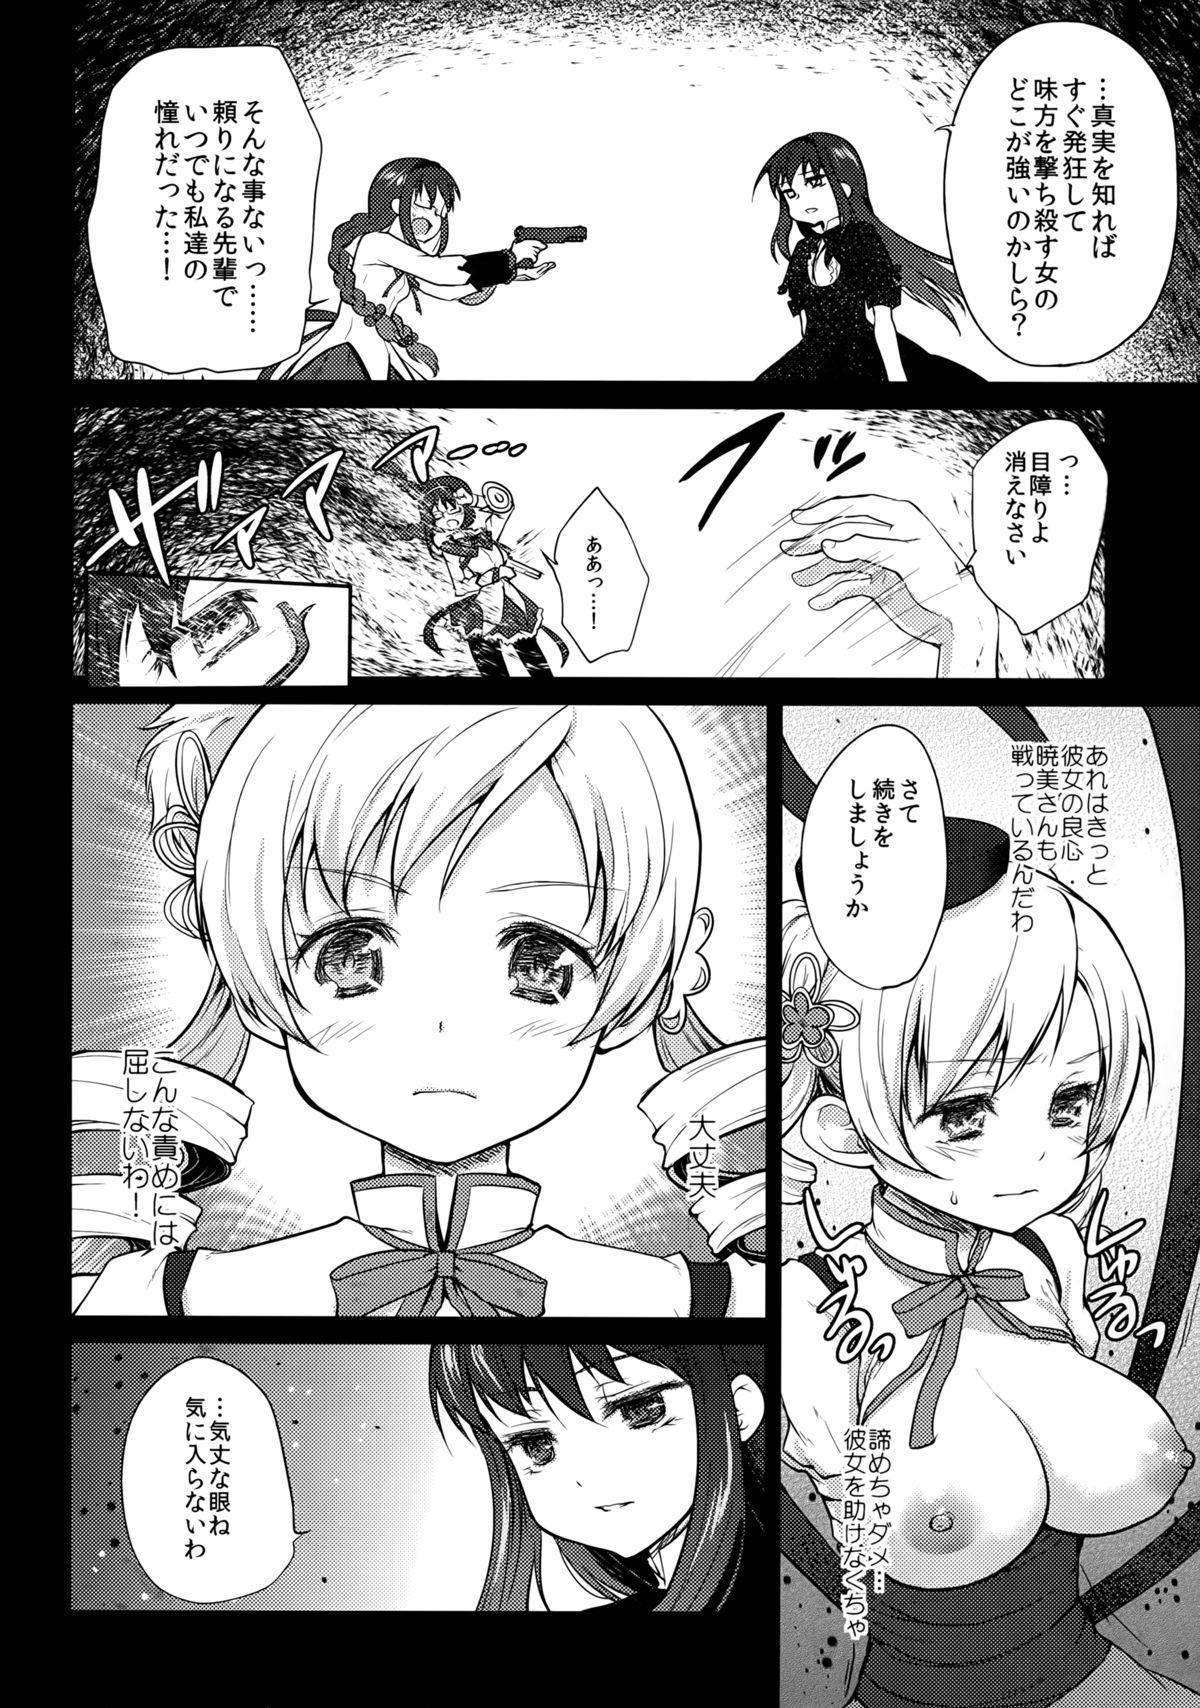 Friends Hitoribocchi wa Sabishii Mono ne - Puella magi madoka magica Chudai - Page 8